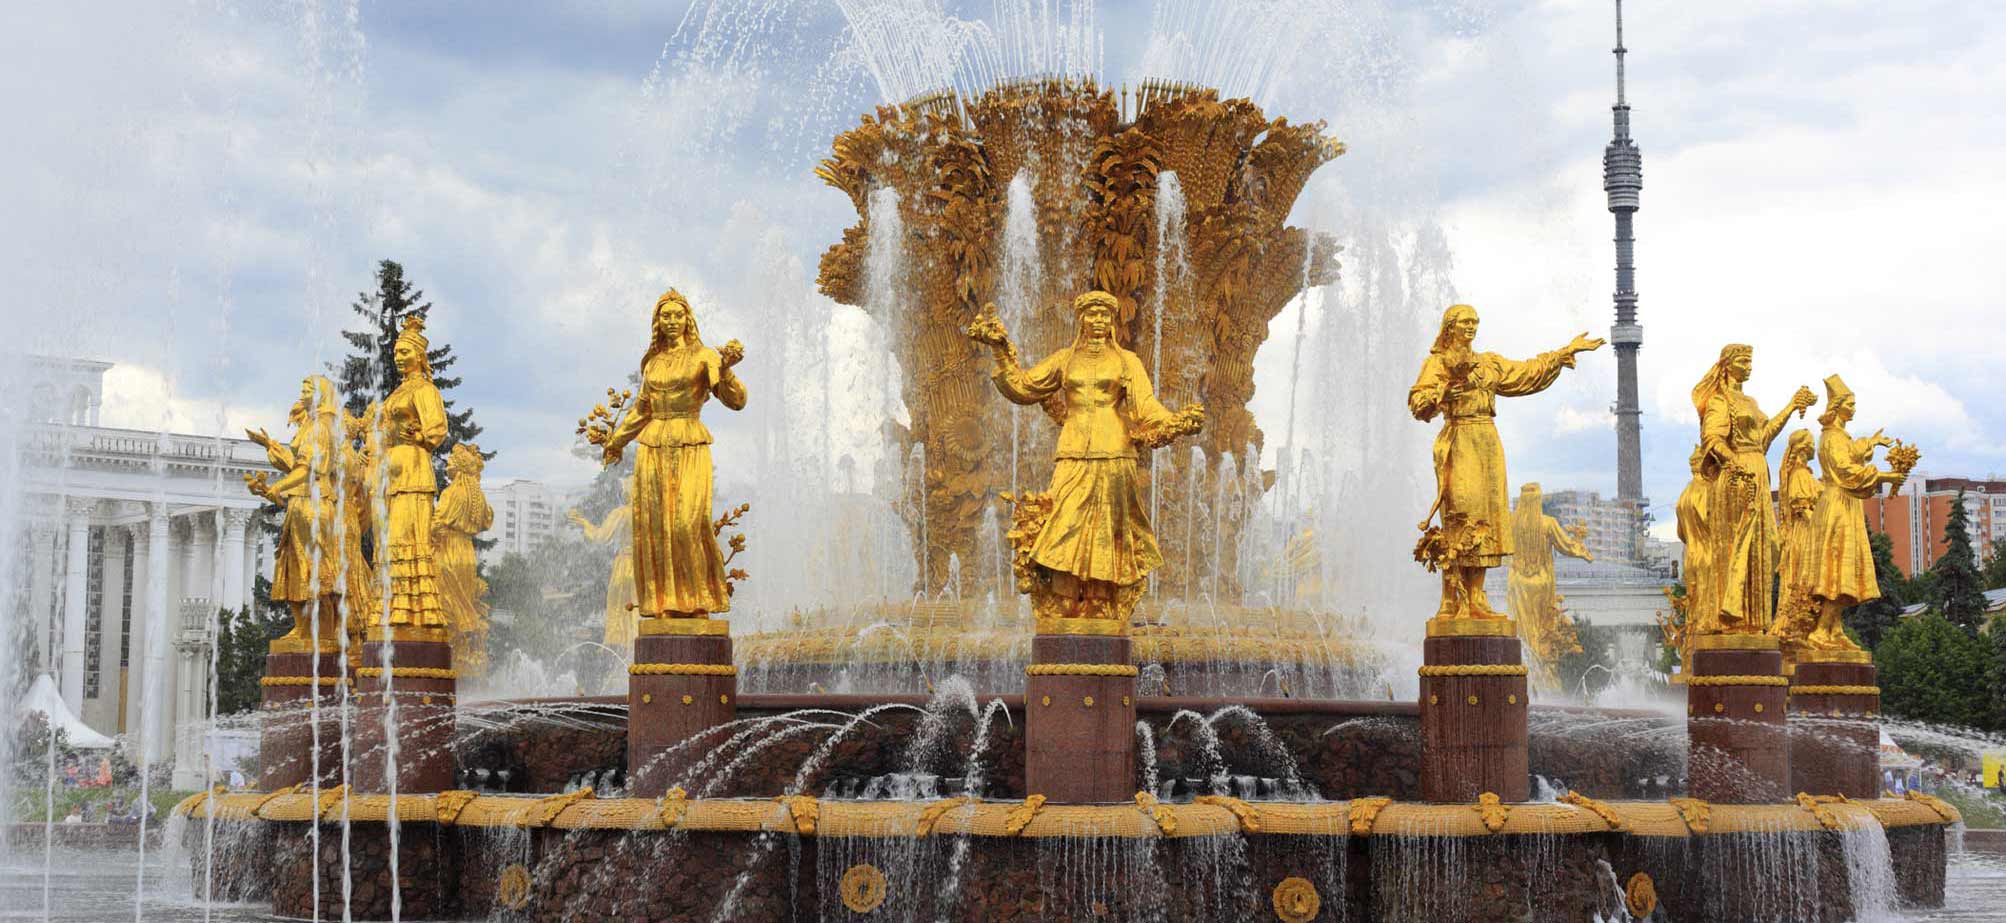 Fontana di Mosca